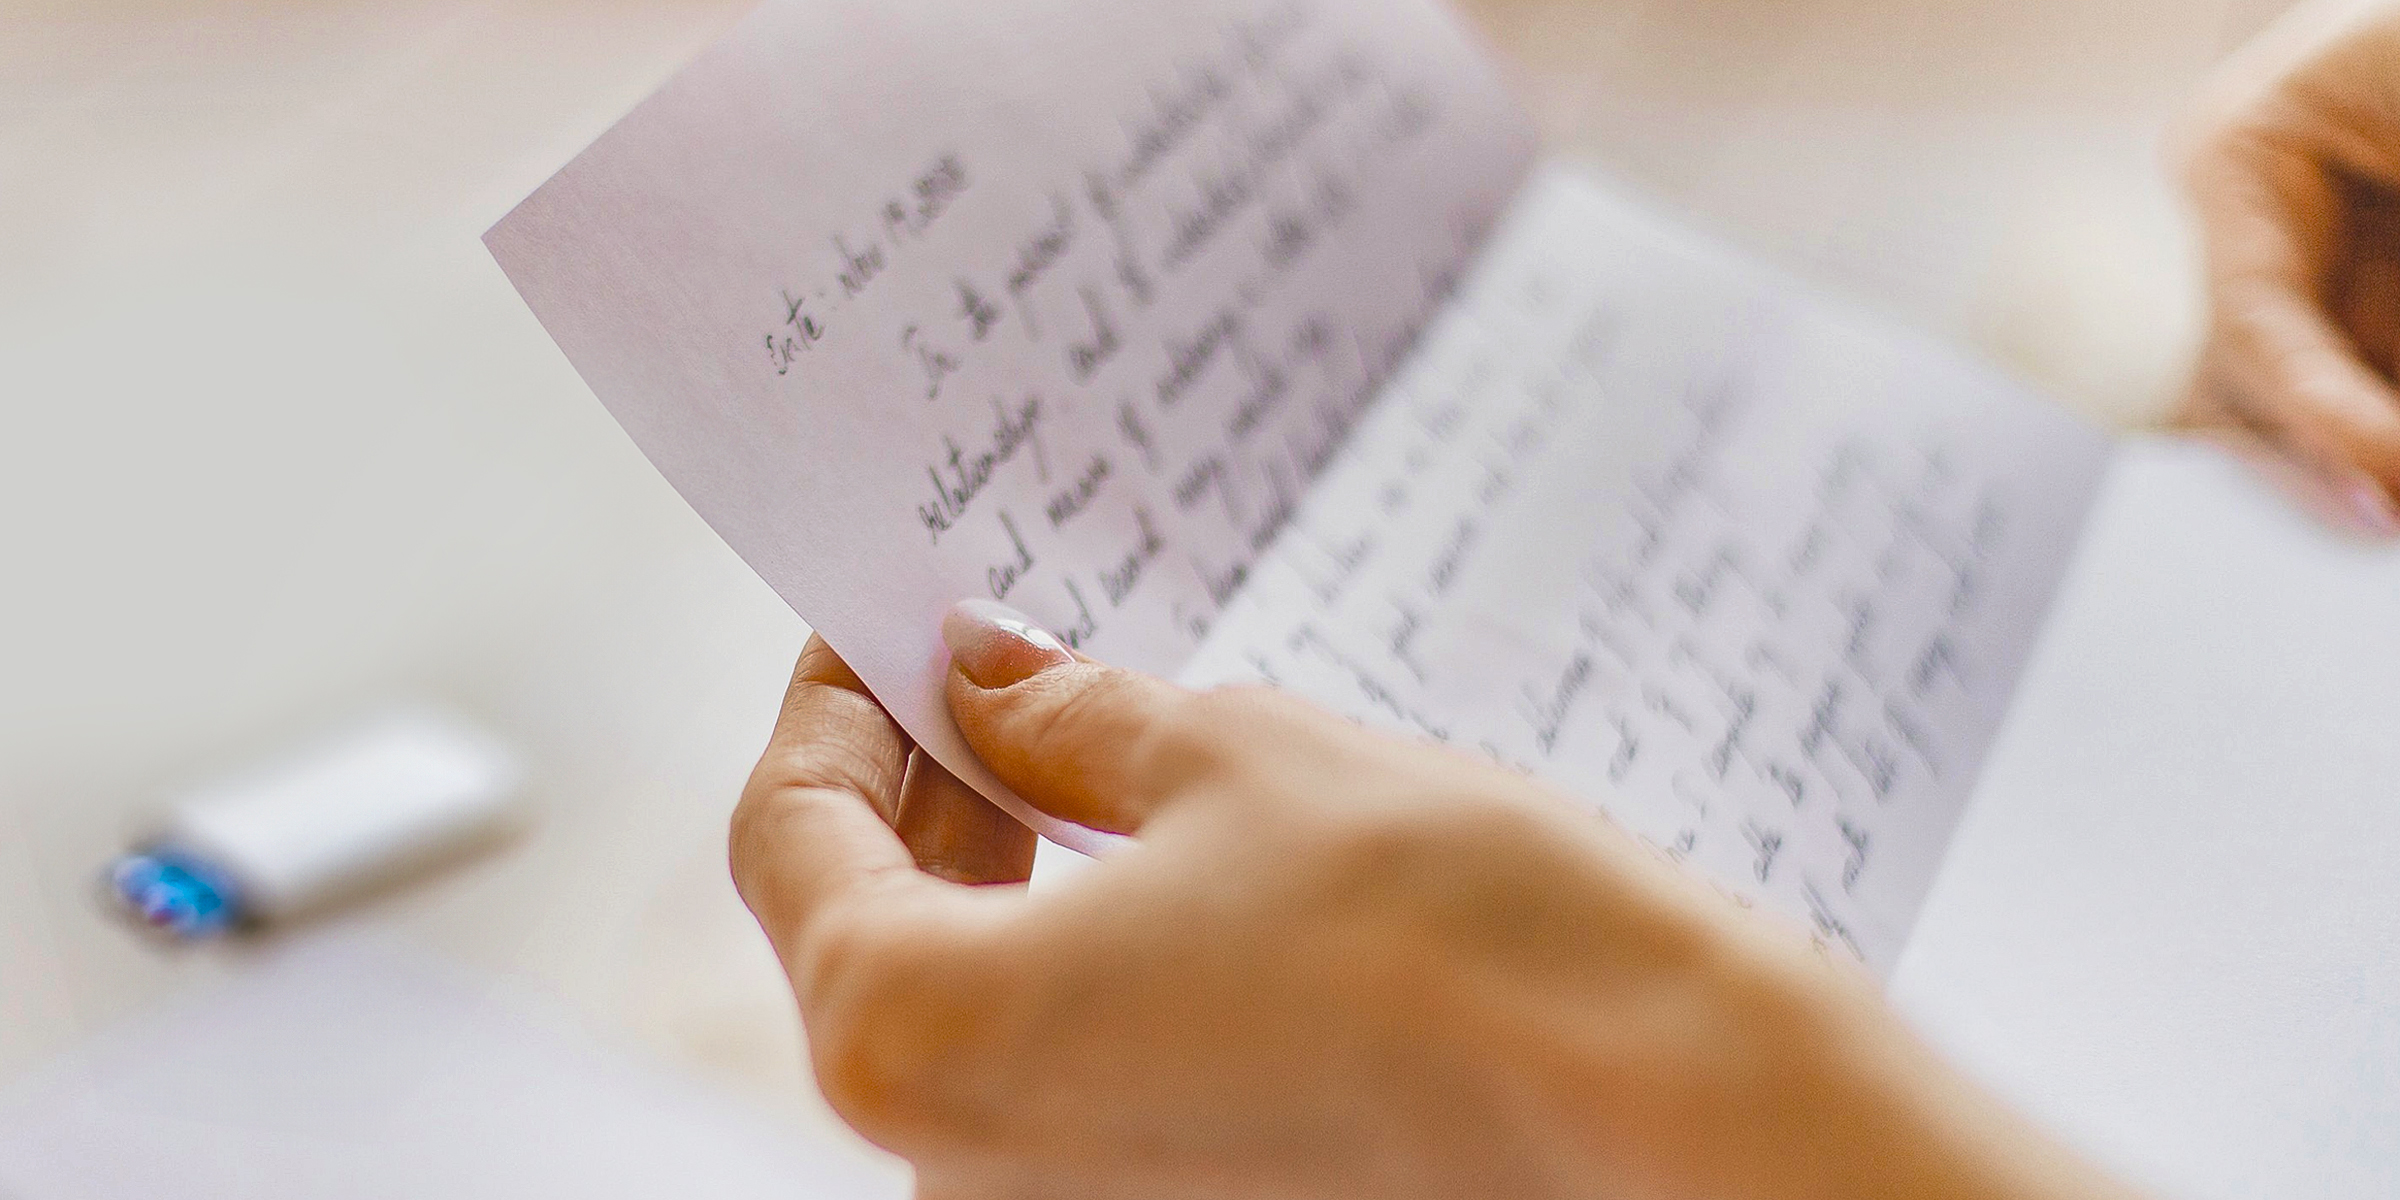 A handwritten note | Source: Shutterstock